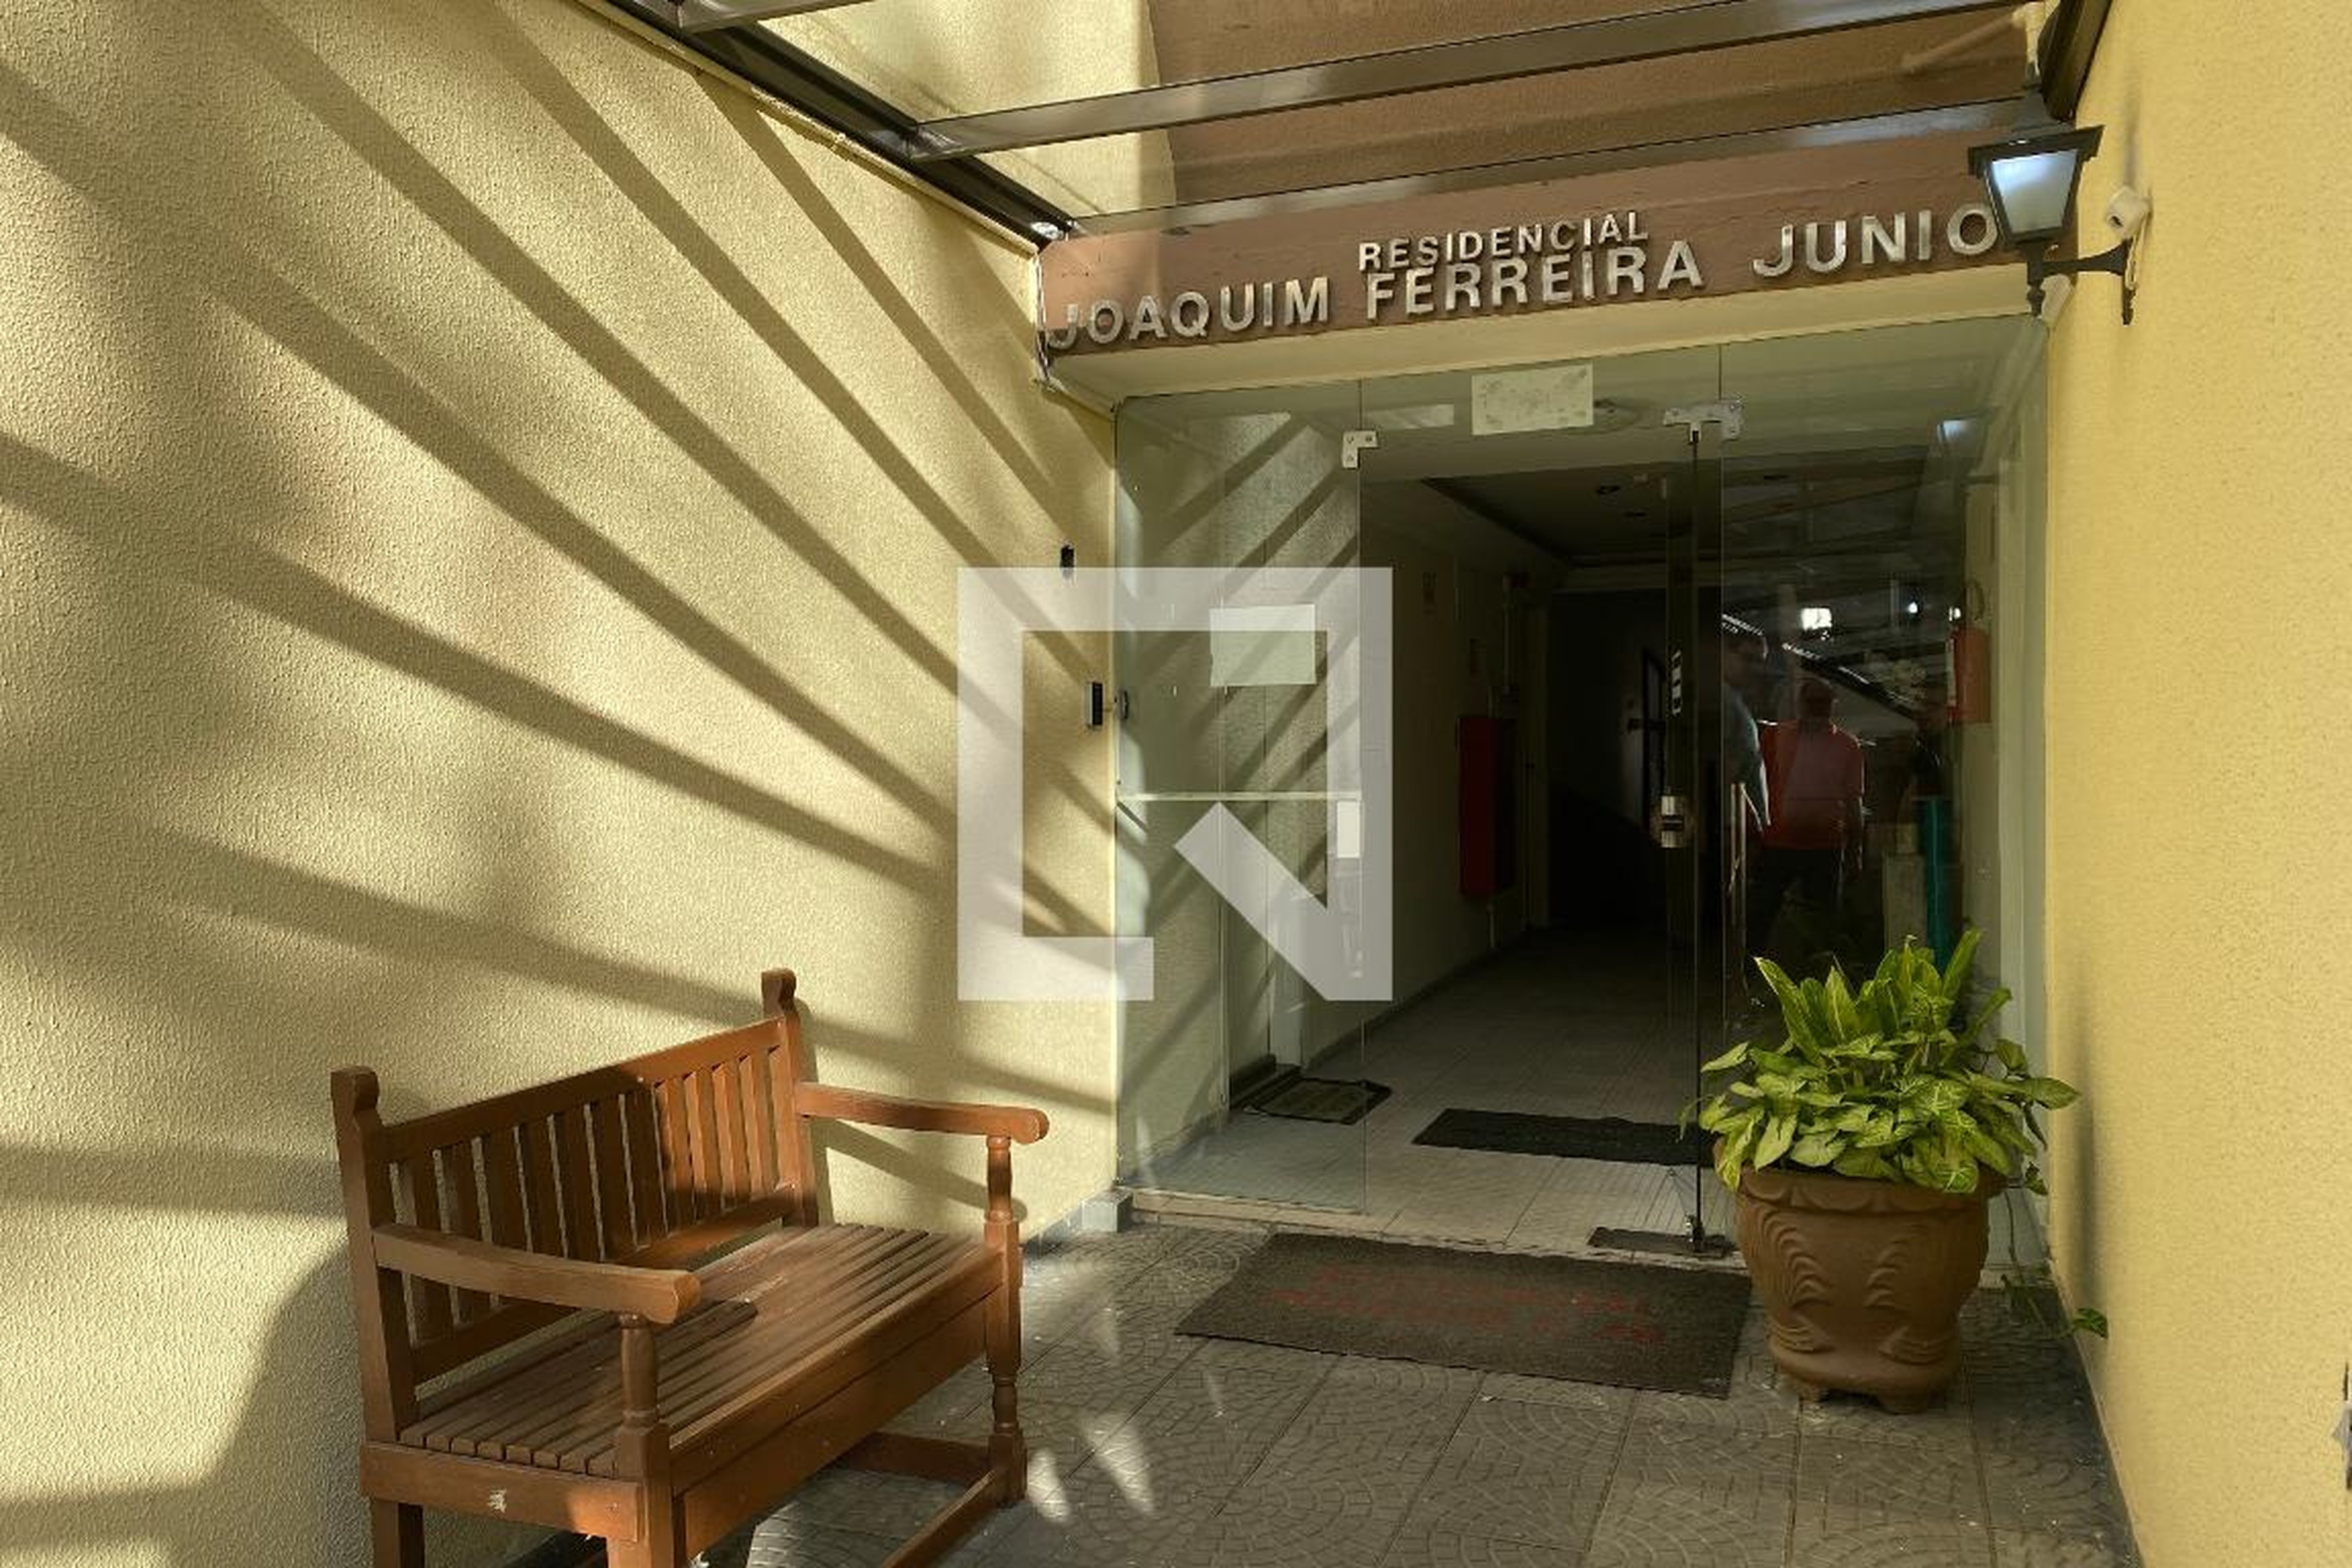 Entrada - Residencial Joaquim Ferreira Junior